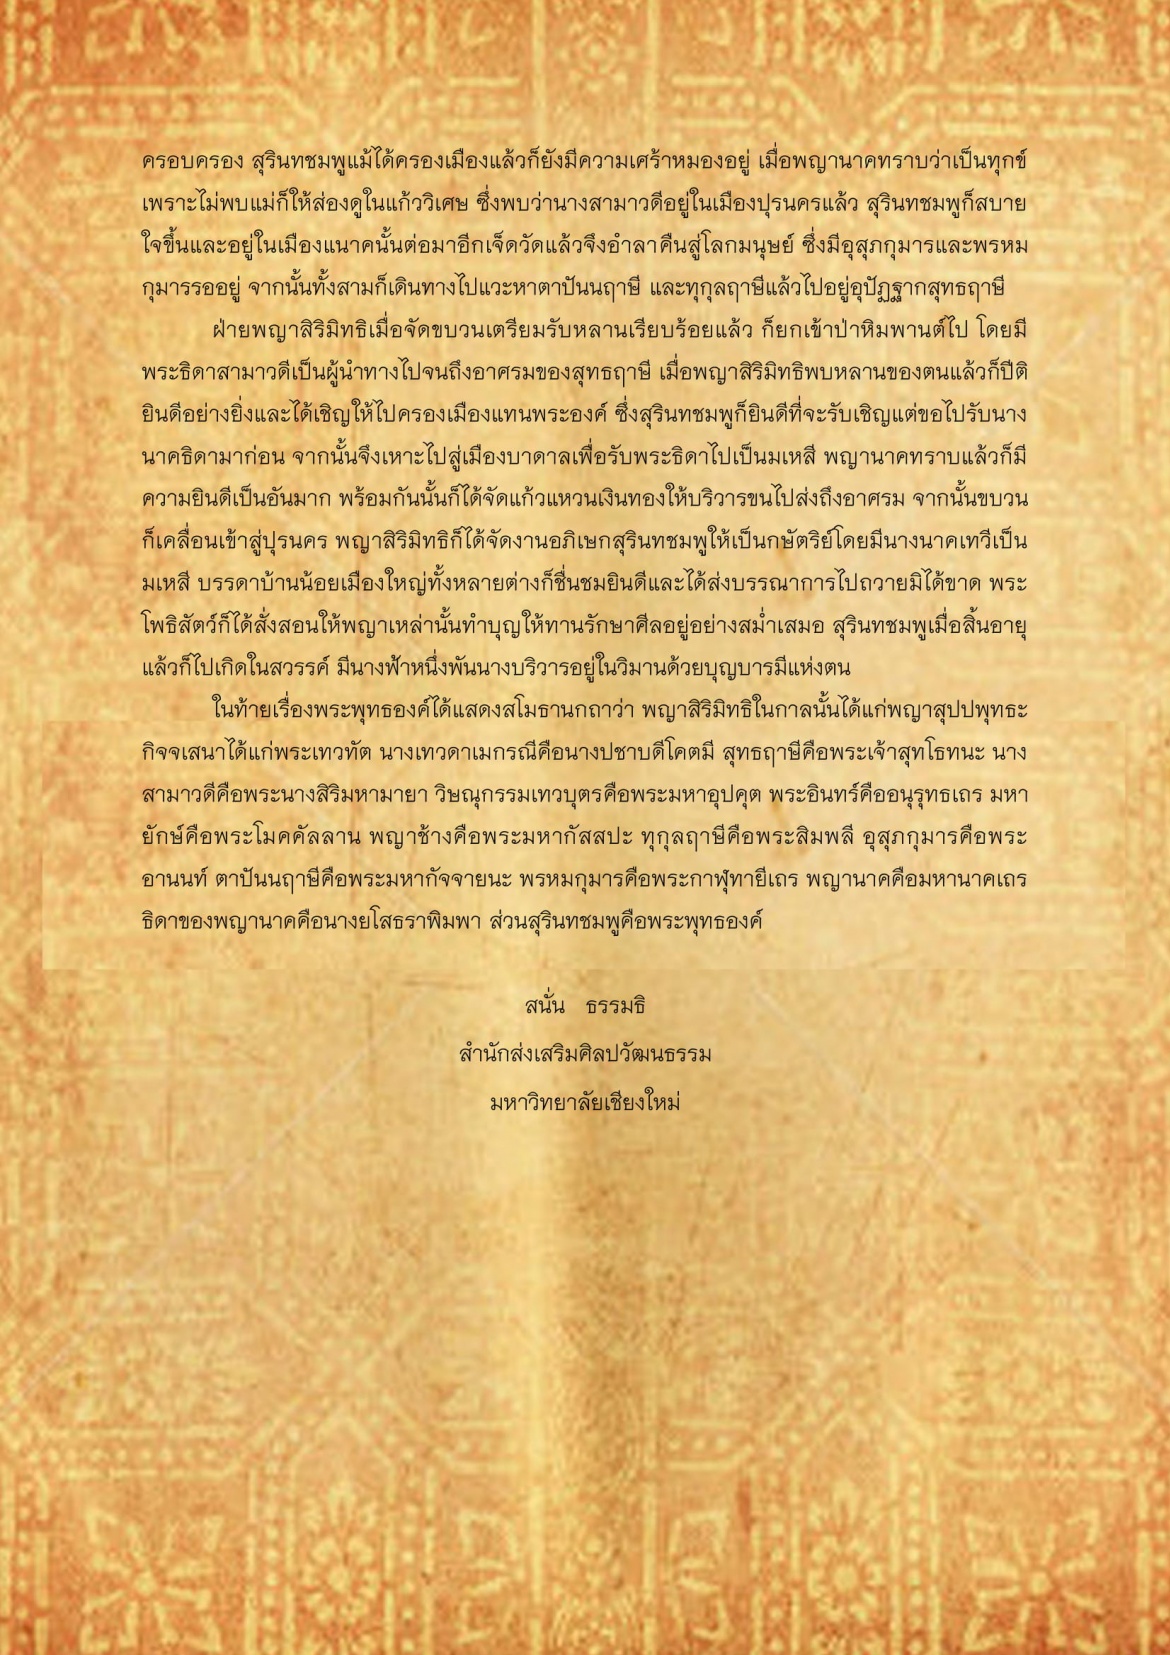 สุรินทชมพู(2) - 1 พฤษภาคม 2560